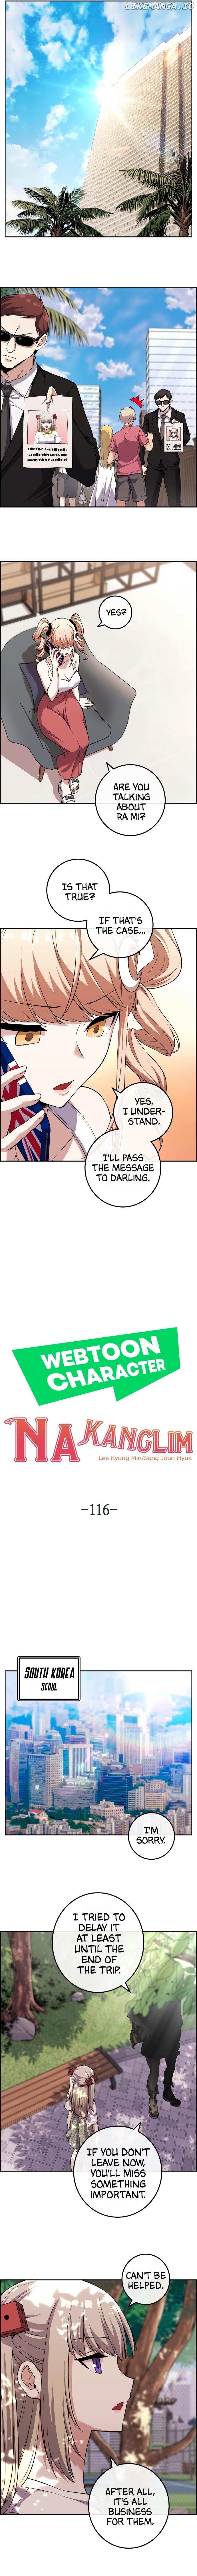 Webtoon Character Na Kang Lim Chapter 116 - page 3